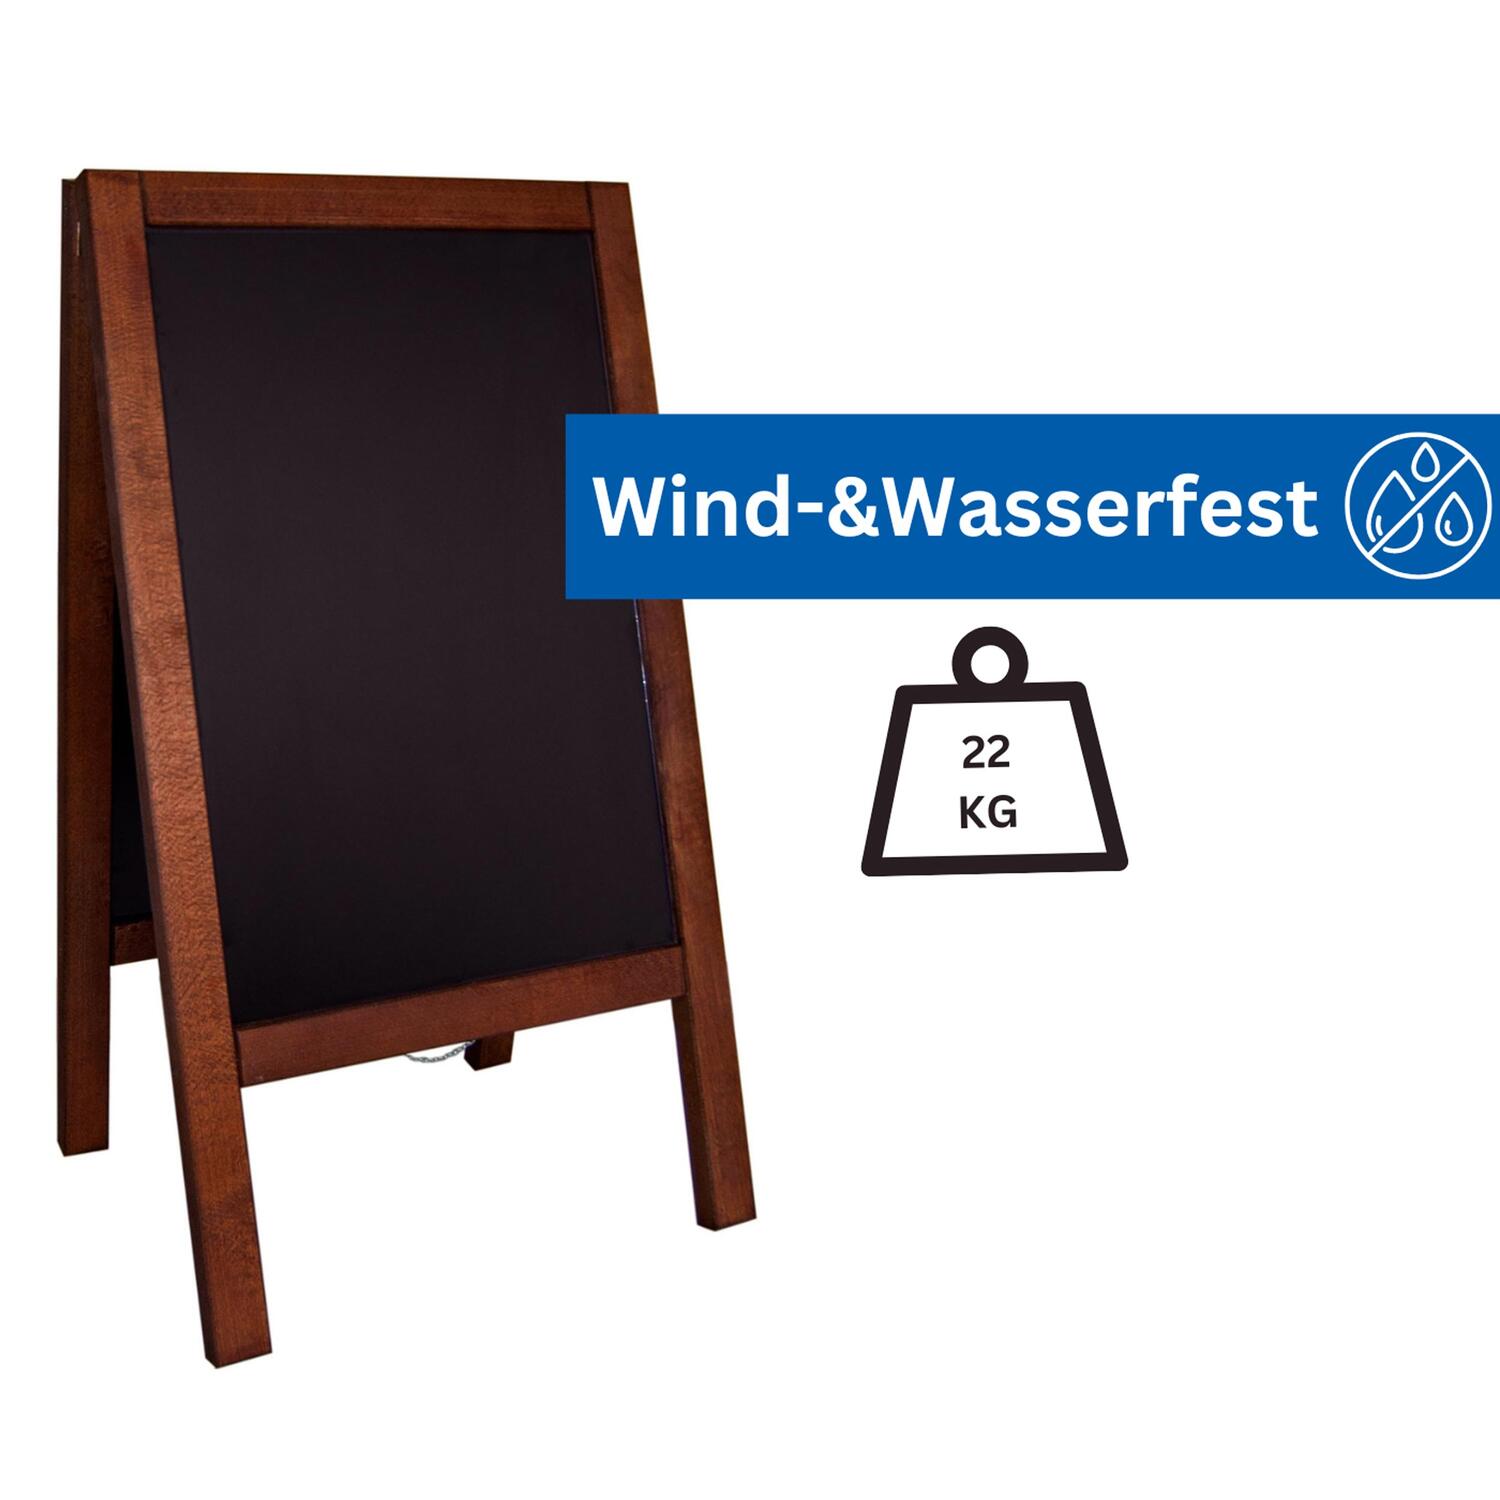 Gehweg-Kreidetafel, dunkelbraun, wind- und wasserfest, 65x118cm, 1 Stk.